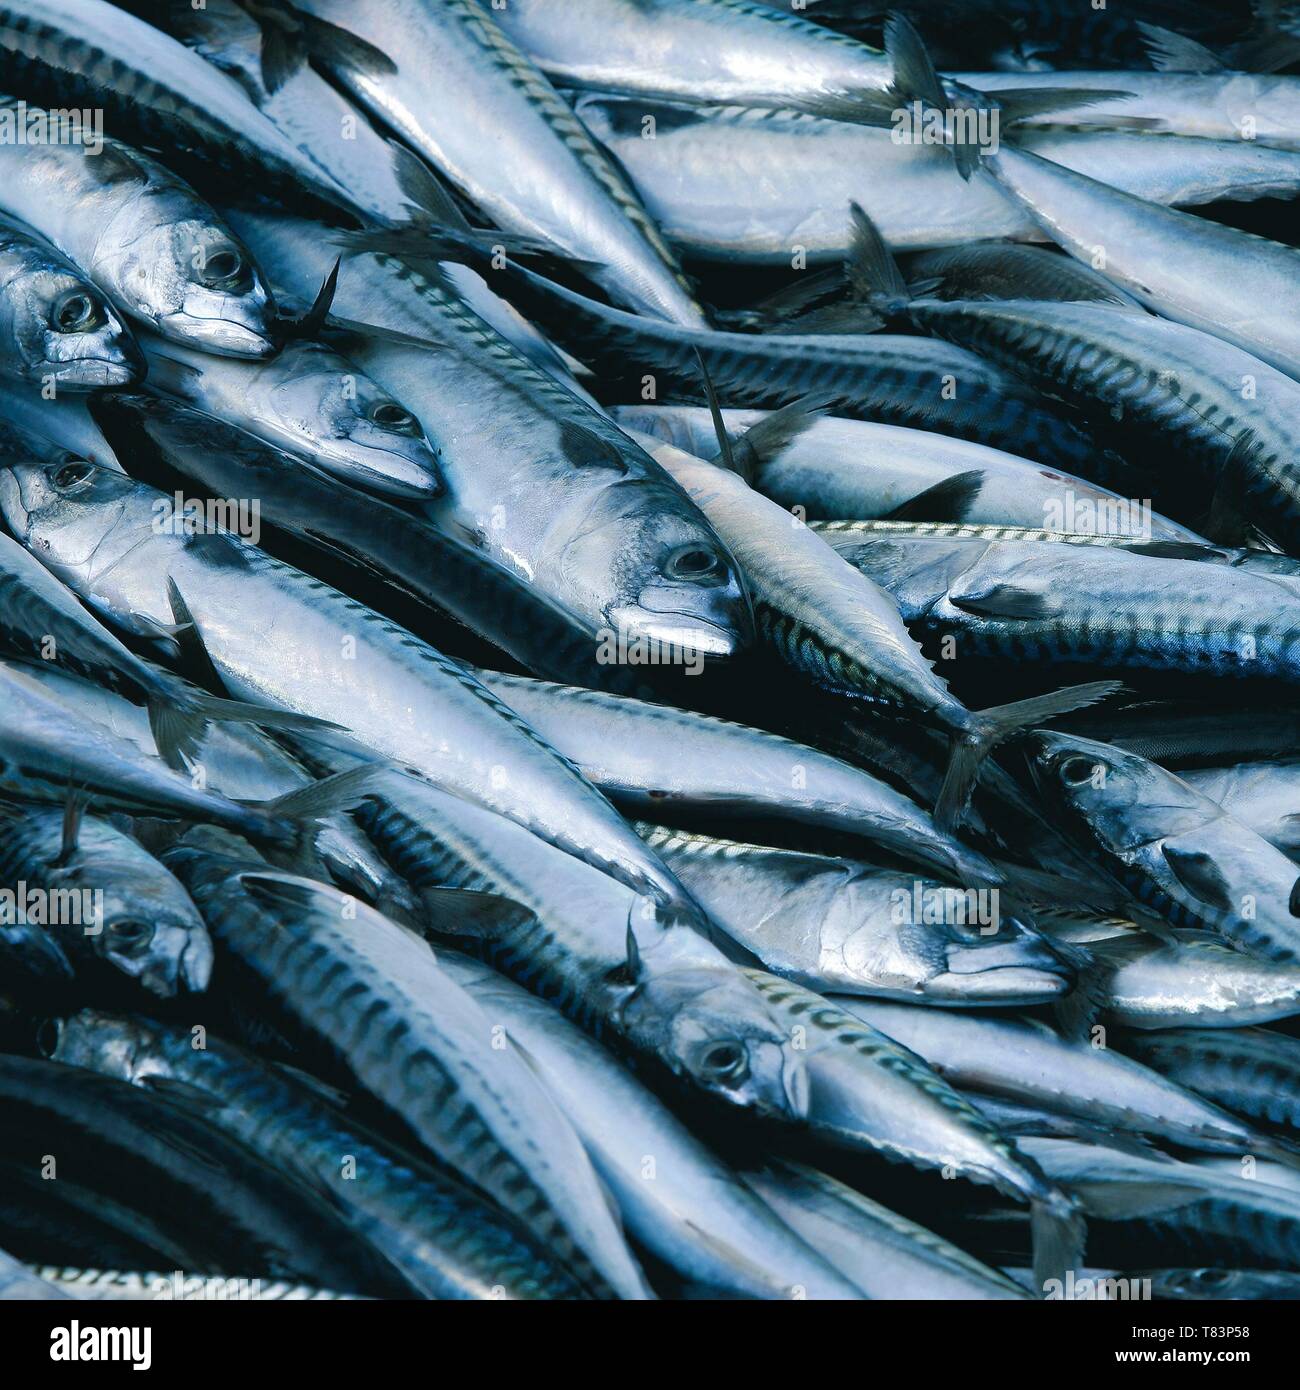 Spain, Asturias, sardines fished at sea Stock Photo